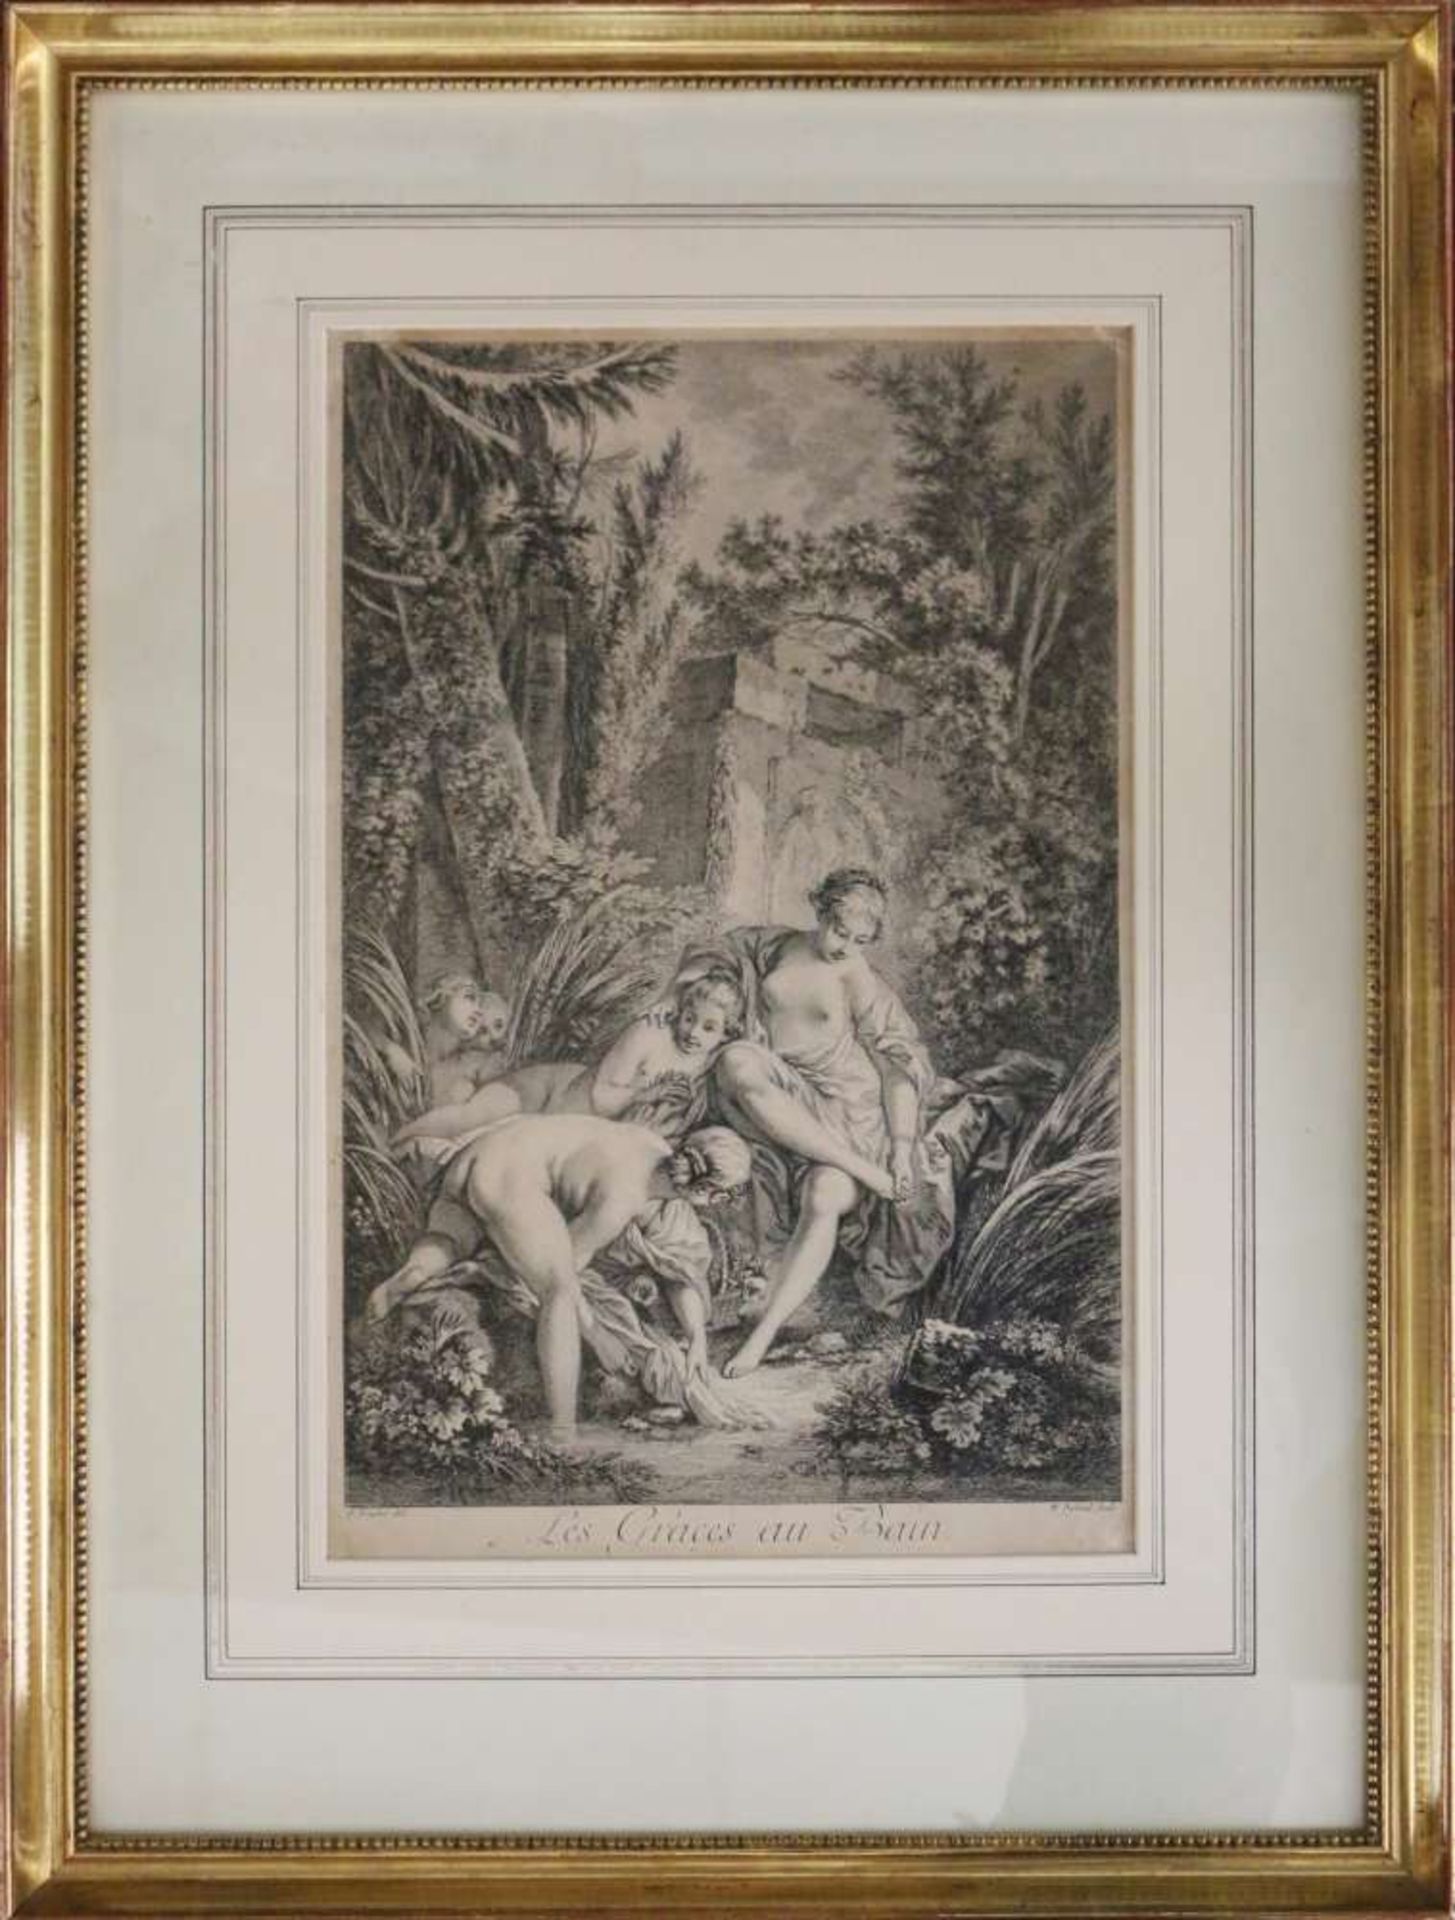 William Wynne RYLAND (1732-1783) nach François BOUCHER (1703-1770), Les Graces au Bain, Radierung. - Bild 2 aus 4